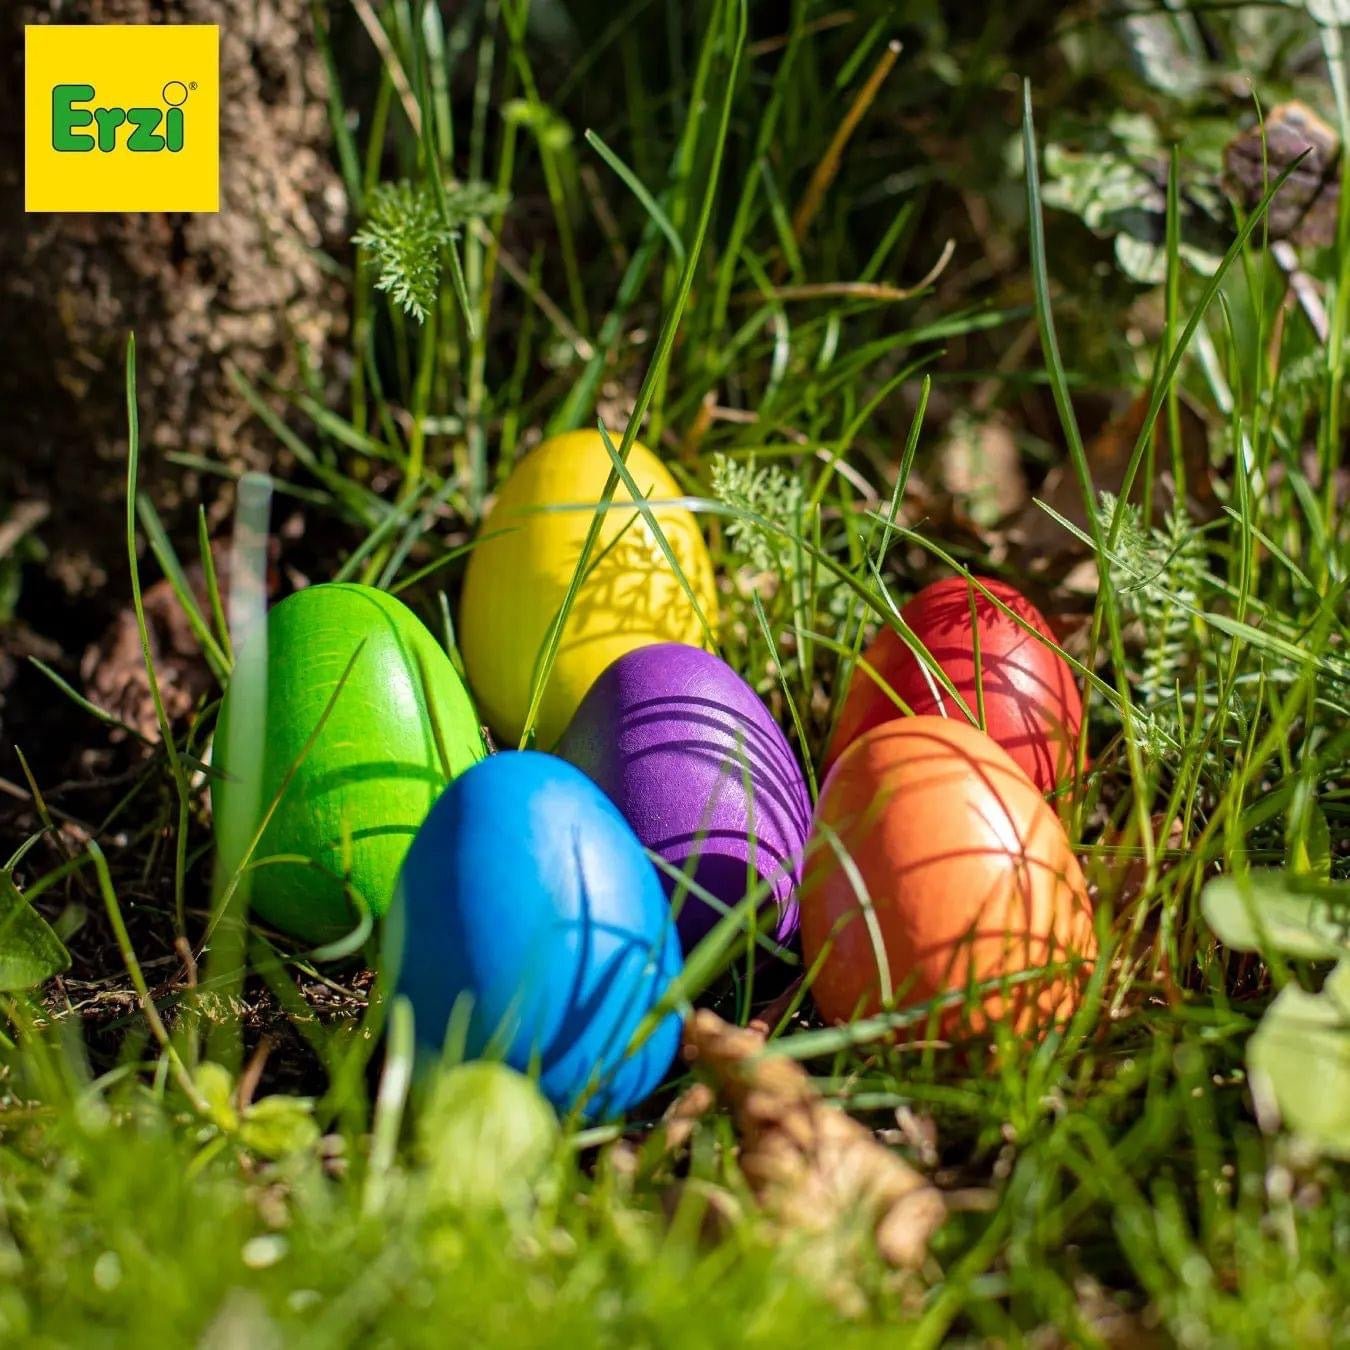 Erzi wooden colored eggs hidden in grass